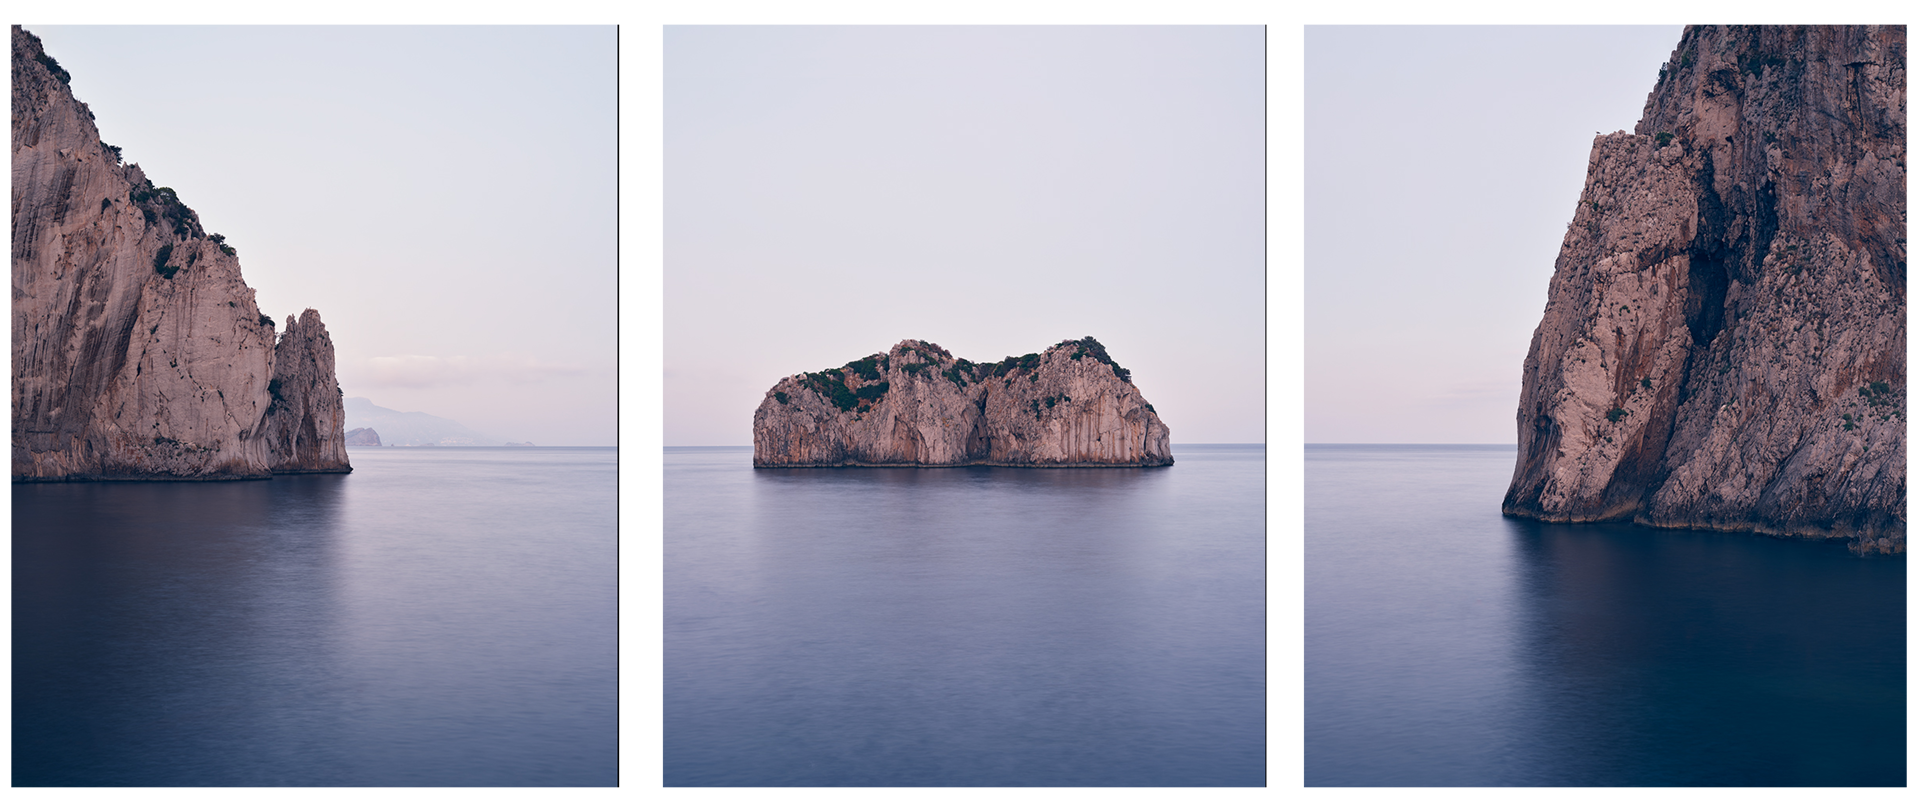 Lo Scoglio Del Monacone, Capri (i) by Jonathan Smith